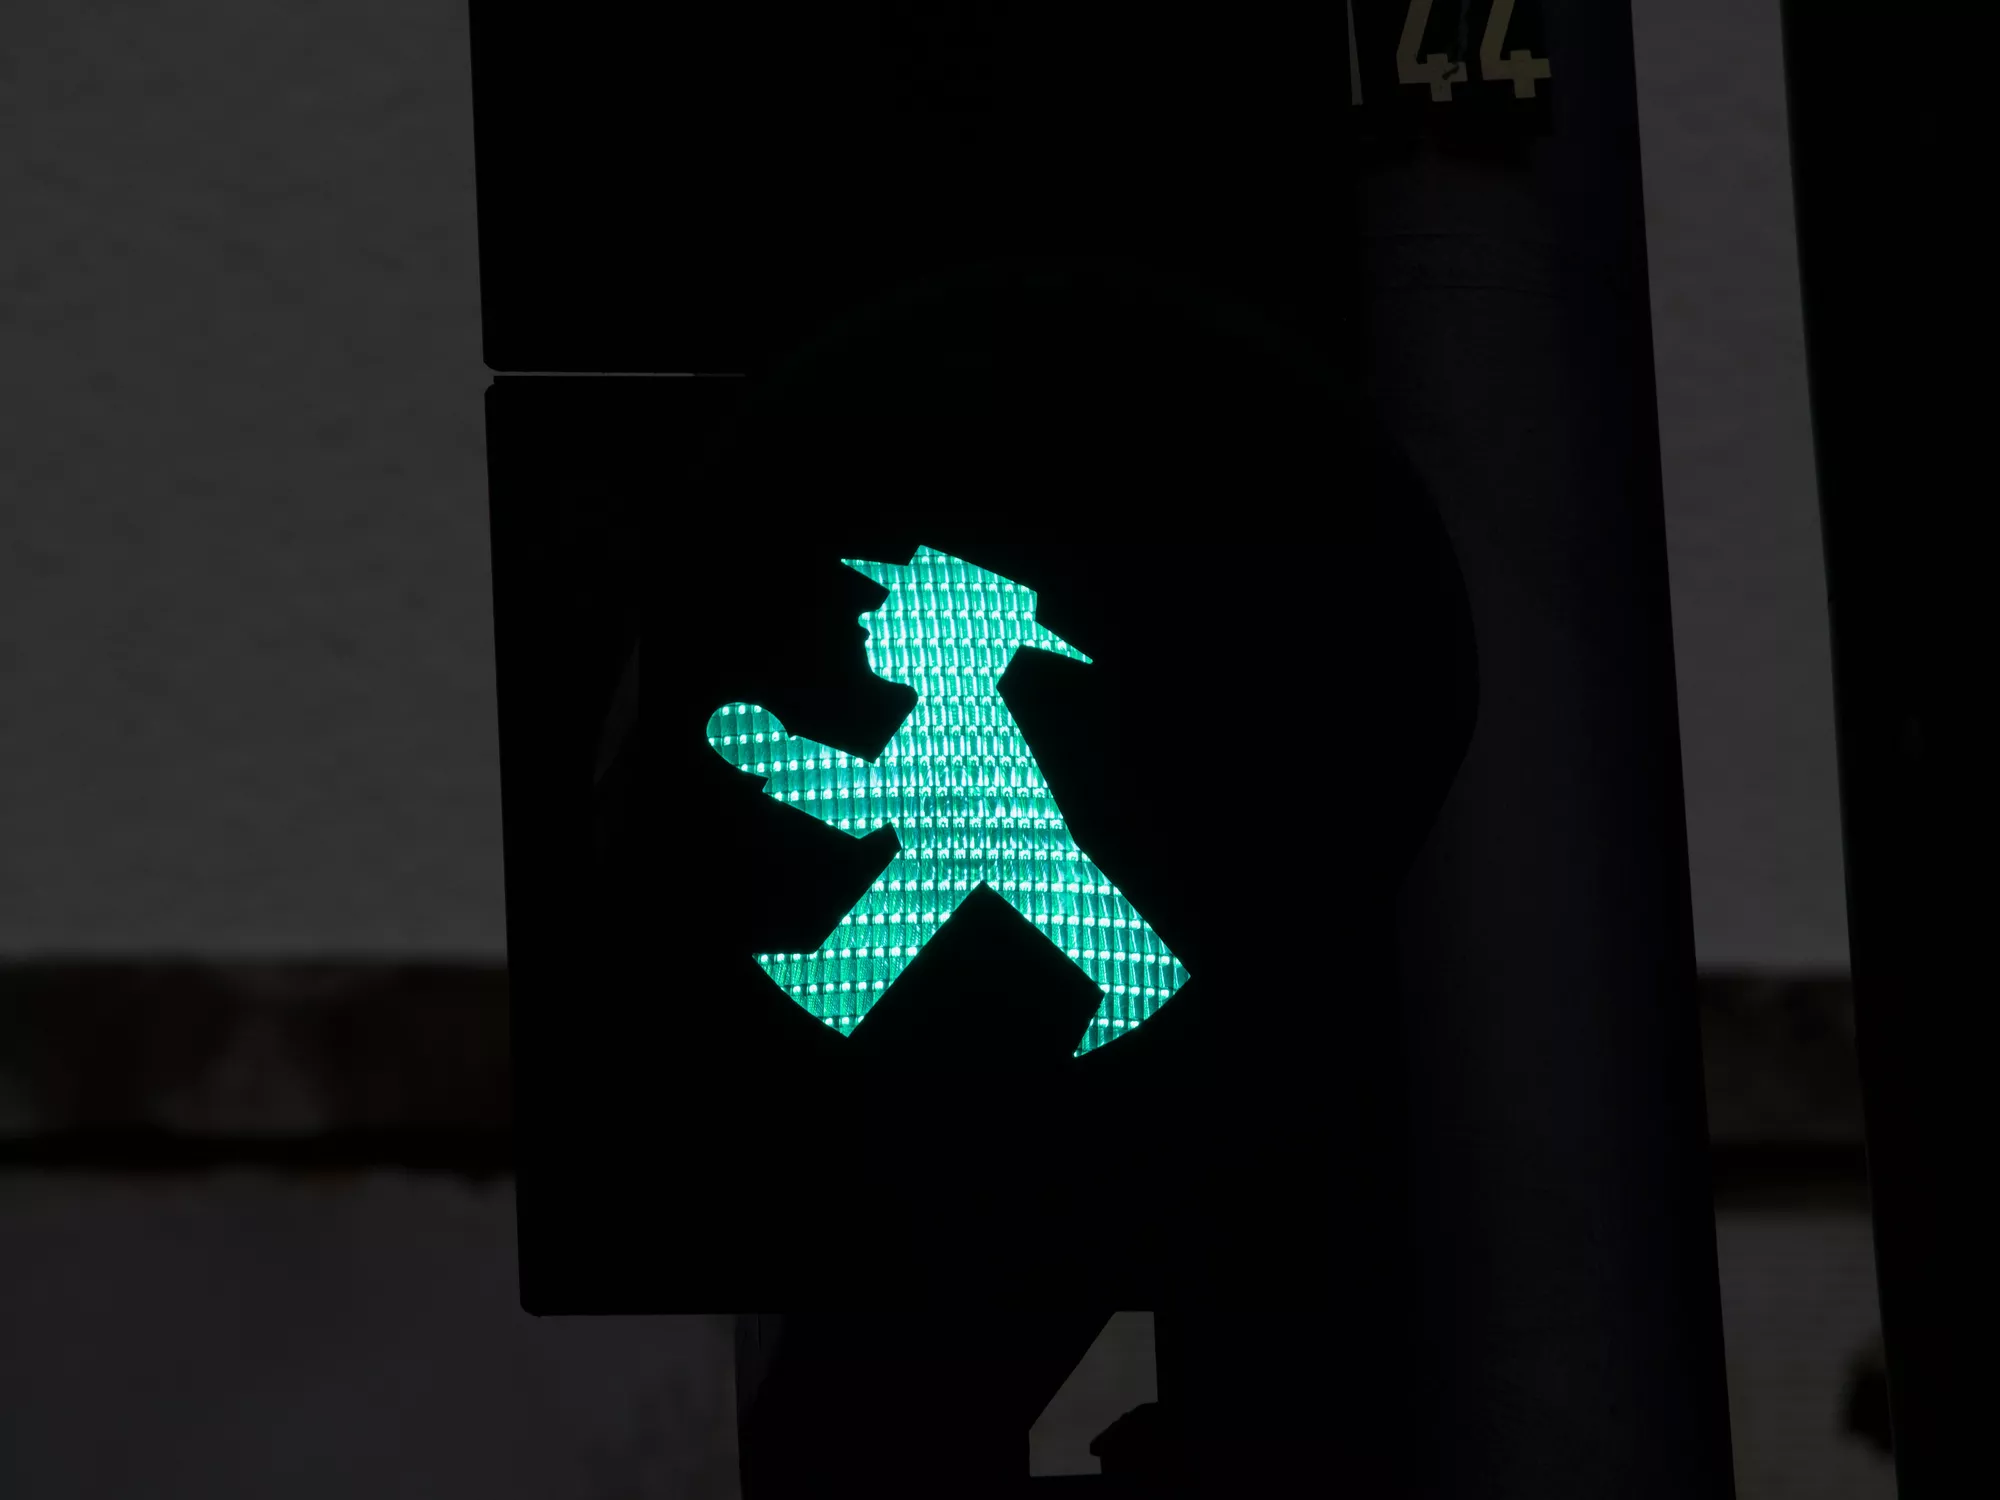 El logo de Berlín és un ninot de color verd com els que indiquen la prioritat de pas en els semàfors